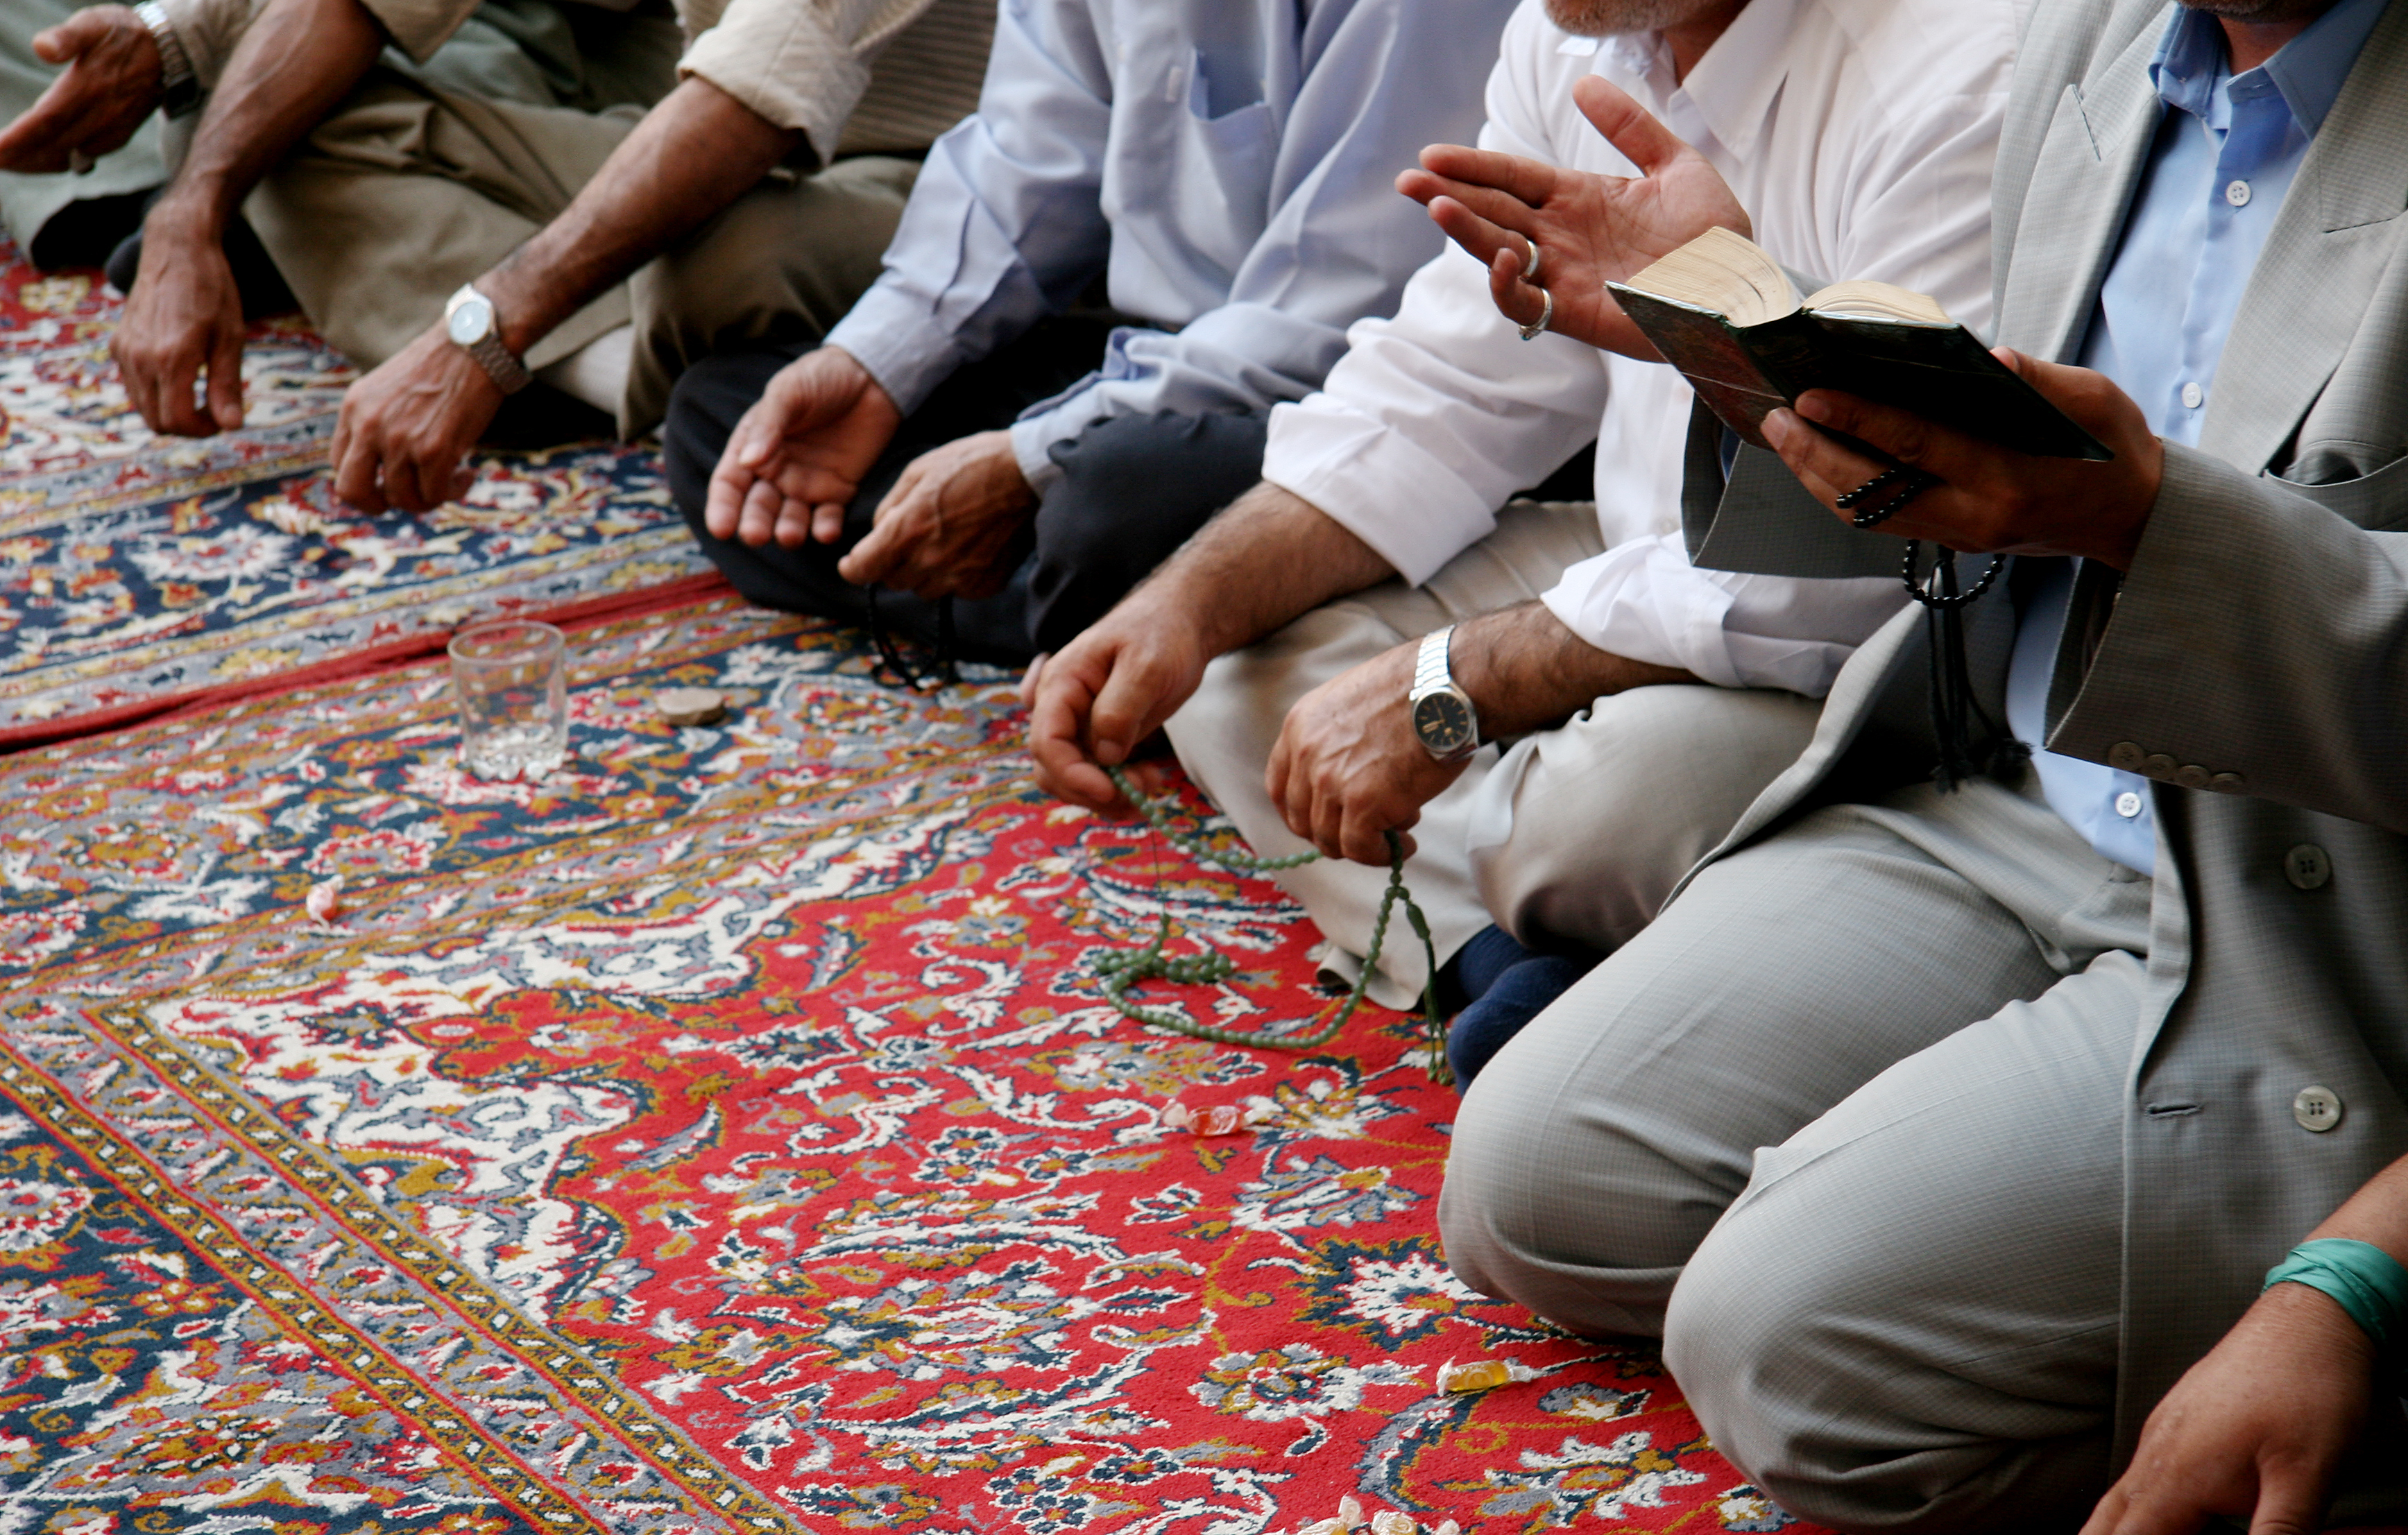 Musulmans en train de prier dans une mosquée | Source : Getty Images